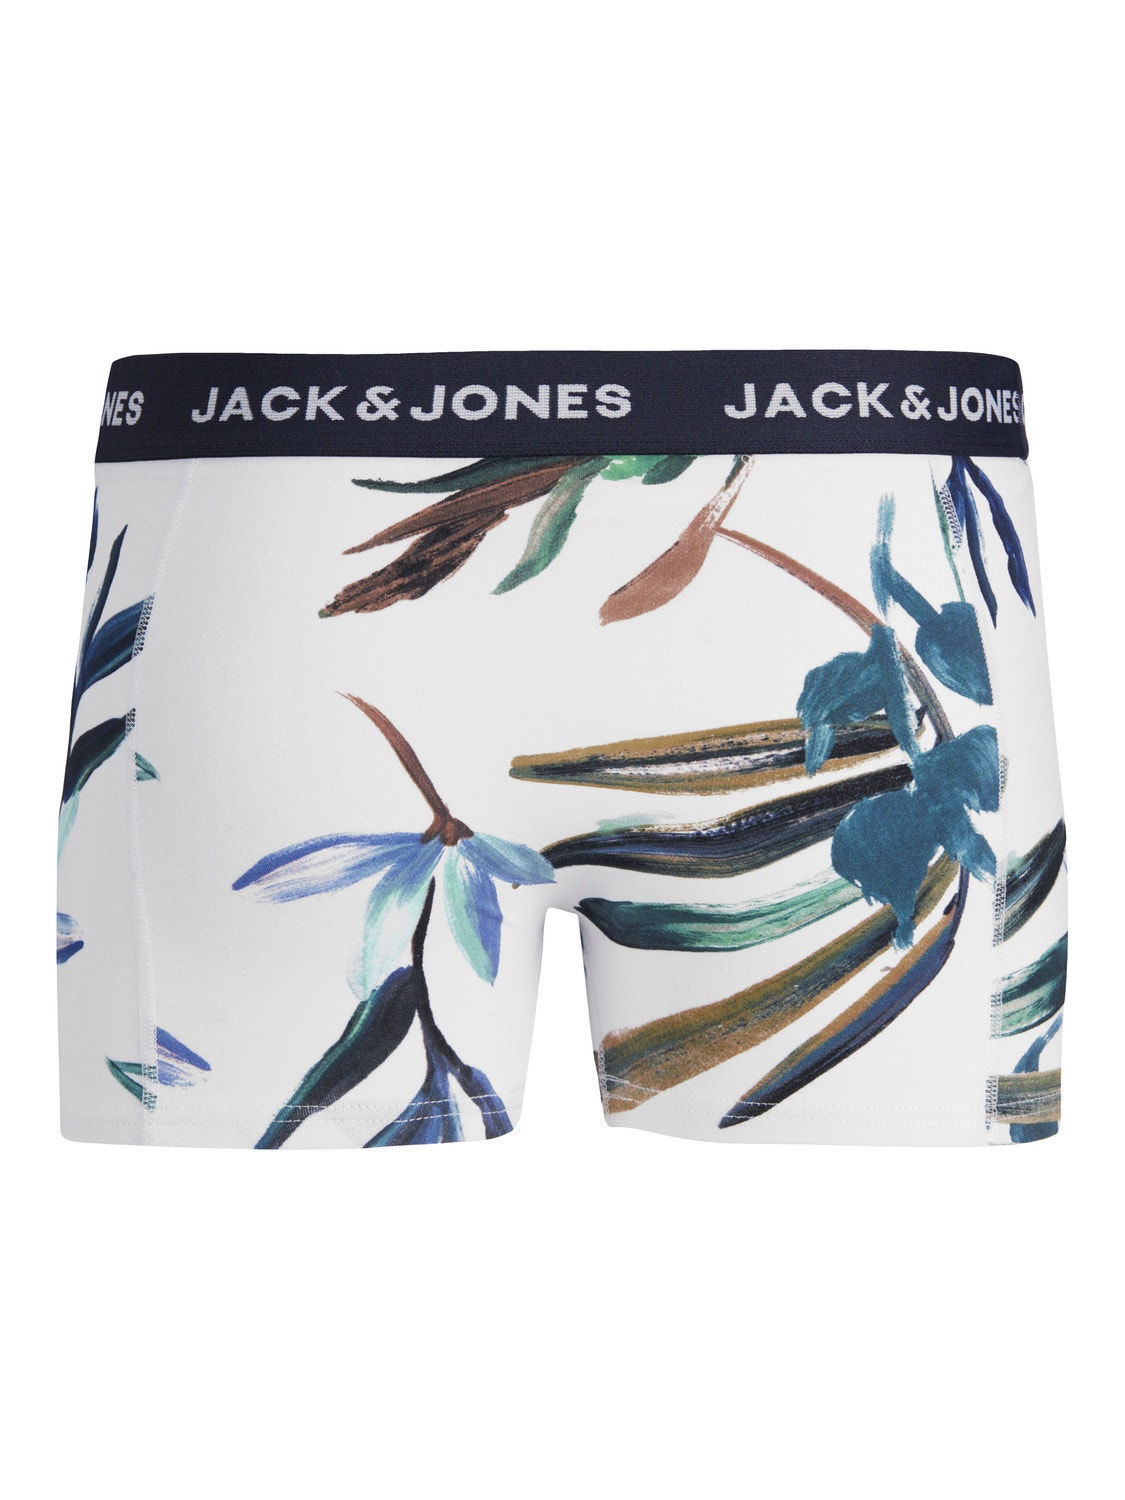 Jack & Jones 3-pack Trunks For boys -Navy Blazer - 12253231